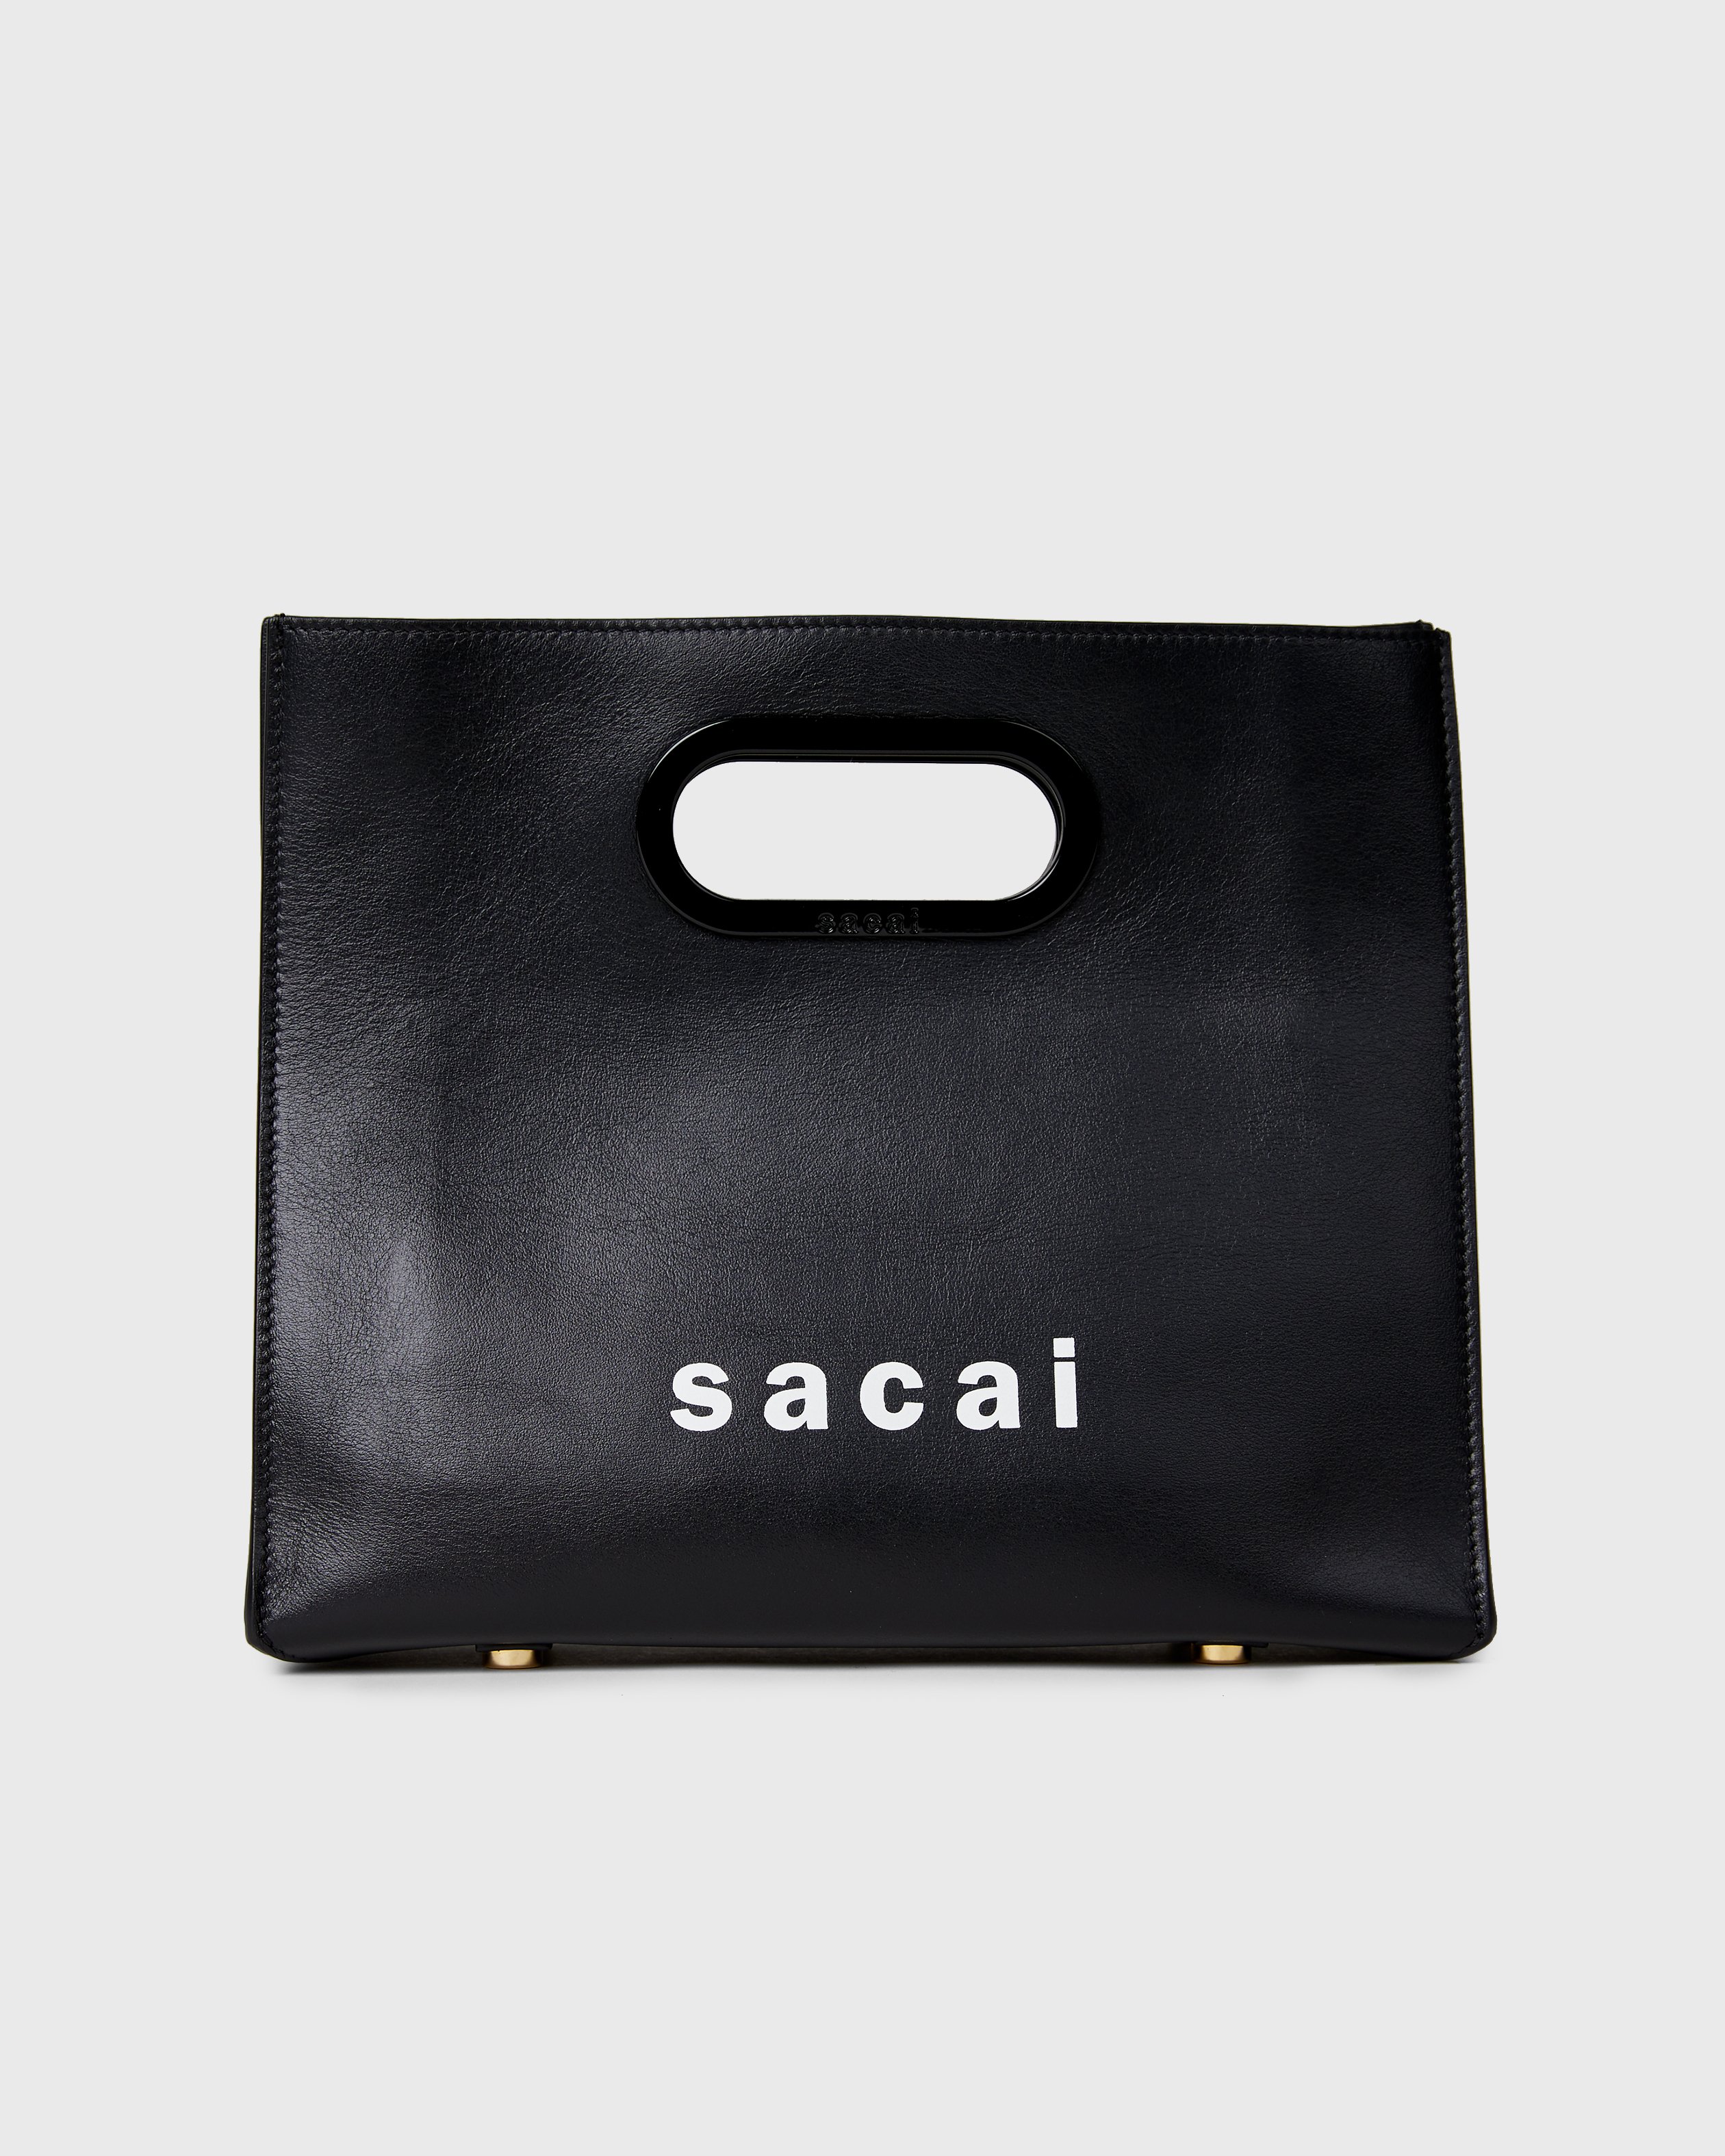 Sacai x Colette Mon Amour - Bag Black - Accessories - Black - Image 2